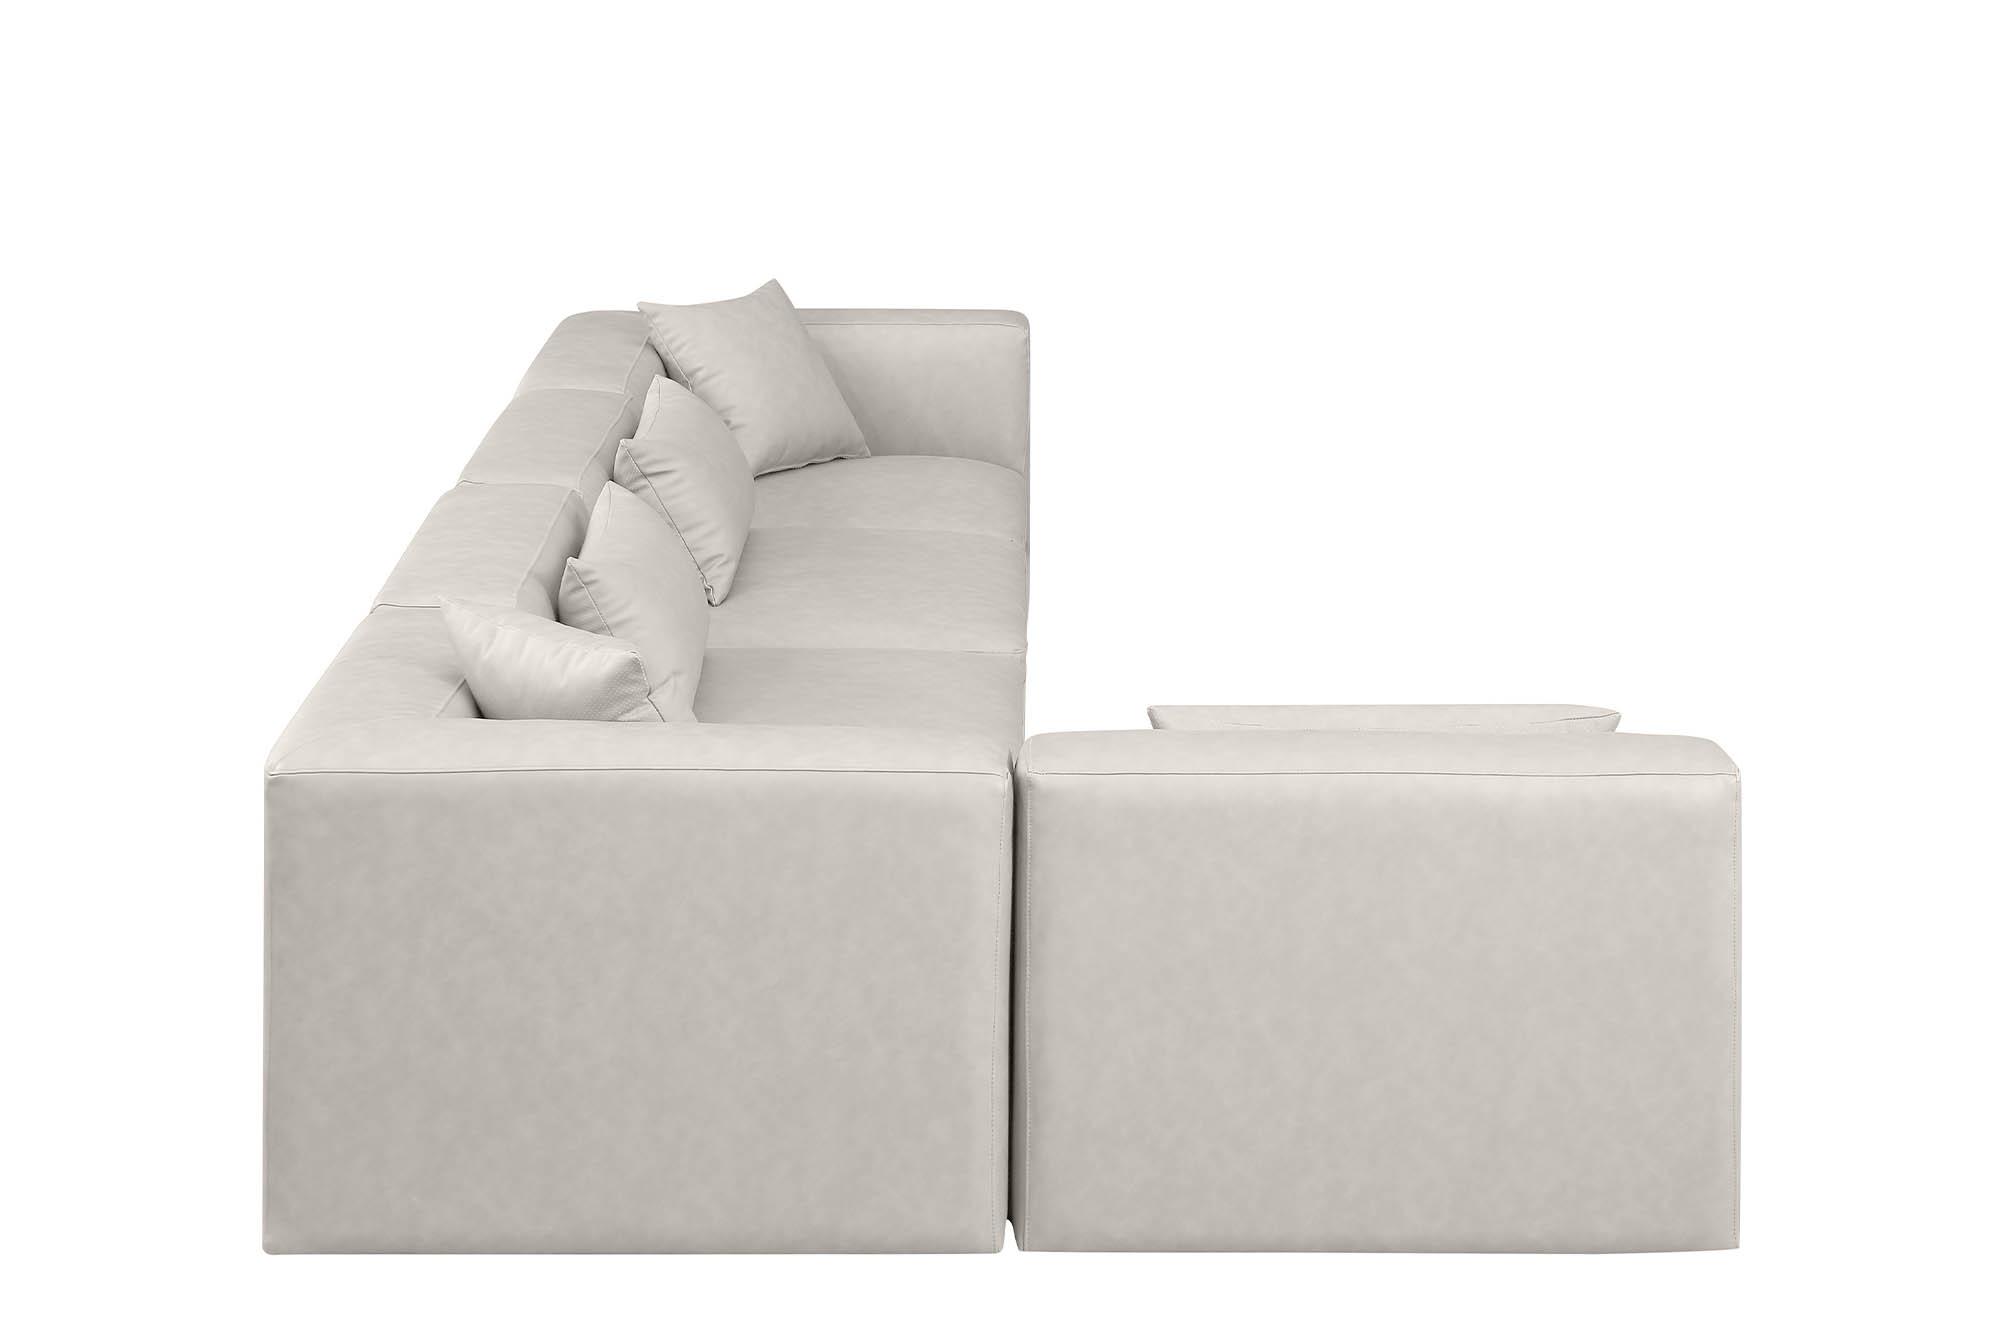 

    
Meridian Furniture CUBE 668Cream-Sec5D Modular Sectional Sofa Cream 668Cream-Sec5D
